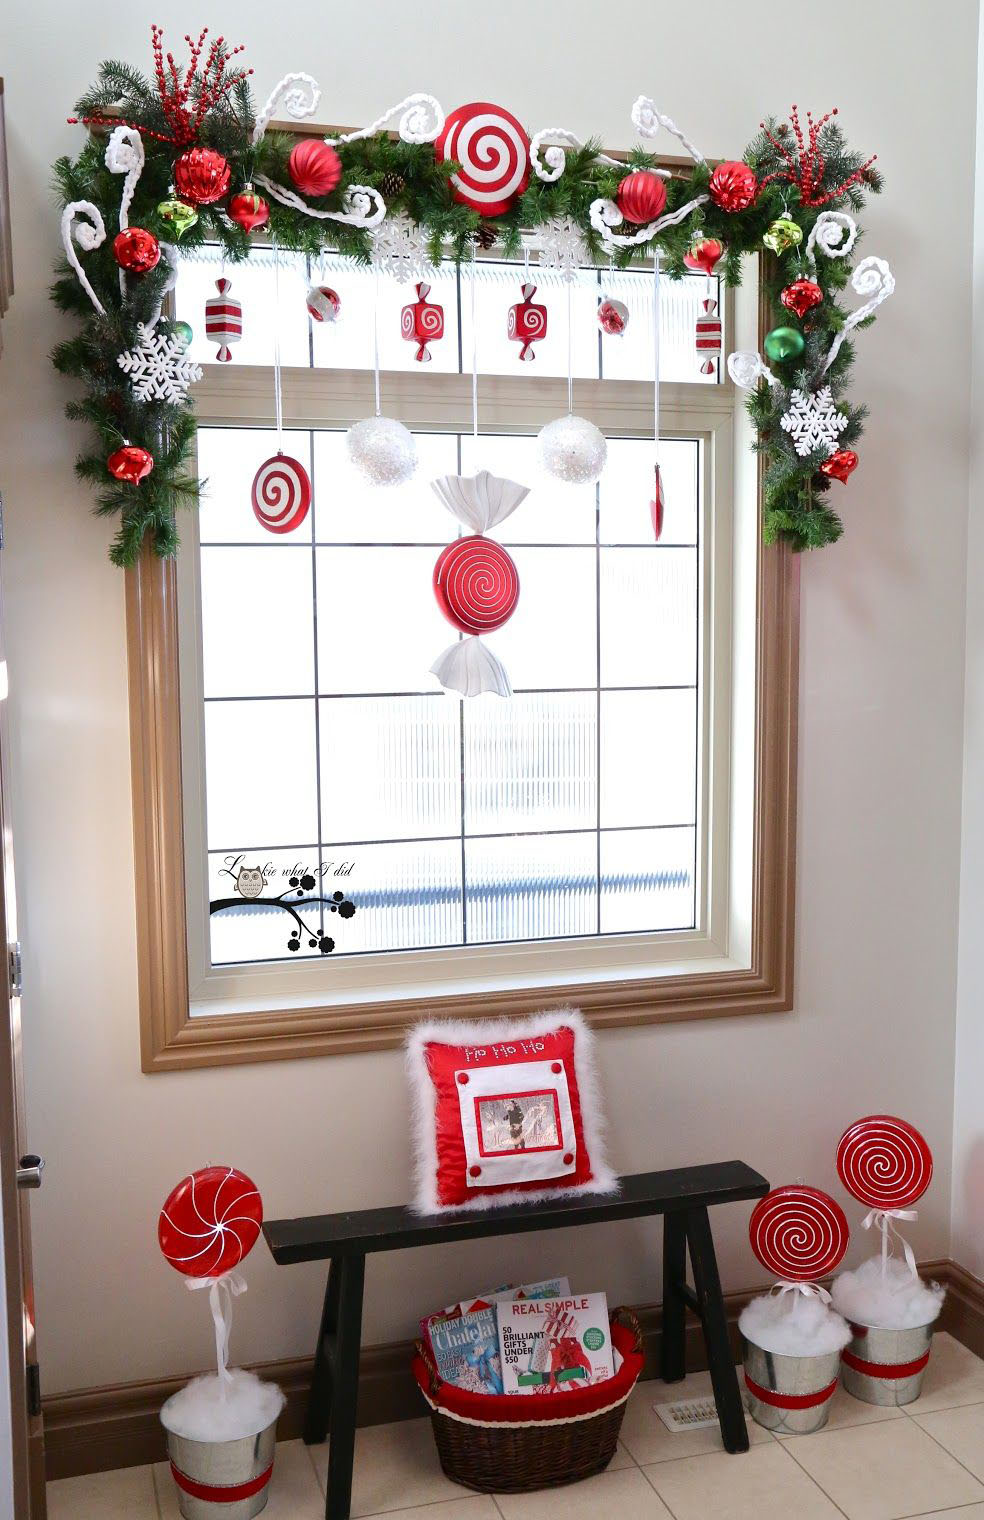 Những tips trang trí văn phòng mùa Giáng sinh chuẩn chỉ với chúng tôi. Kho tư liệu ý tưởng cập nhật mới nhất, giúp bạn có thể tự tay trang trí văn phòng hoàn hảo cho mùa lễ hội sắp tới. Cùng khám phá và lựa chọn những ý tưởng phù hợp với phong cách văn phòng của bạn.